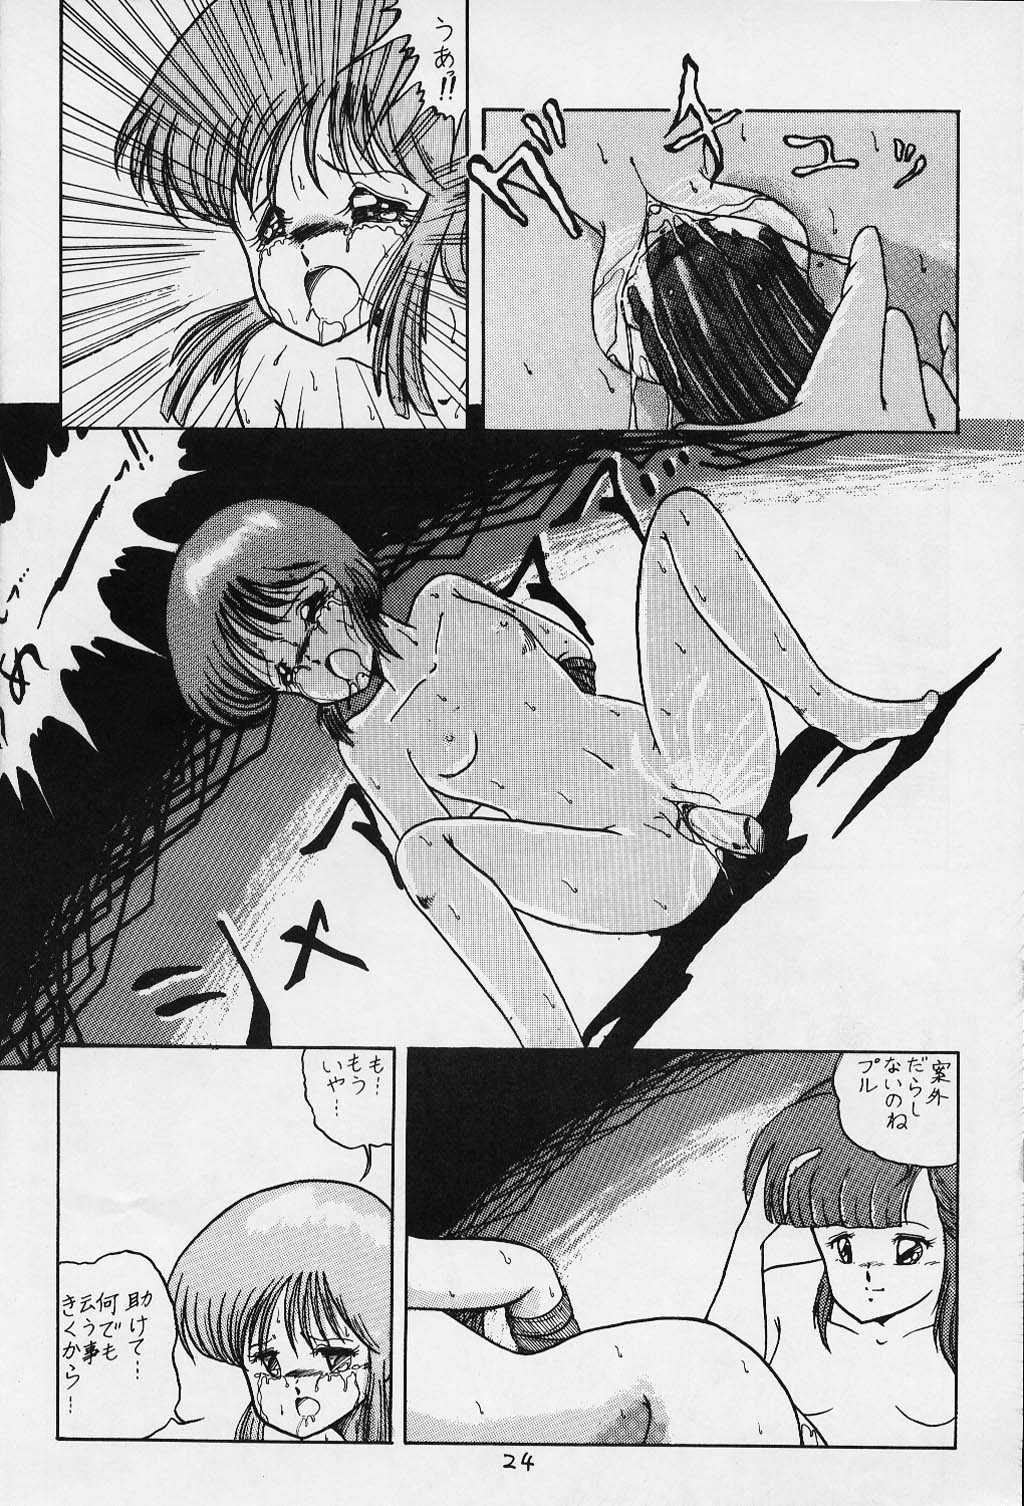 [SF Doujinkai] Yaritai Houdai Vol.1 (Dirty Pair) 